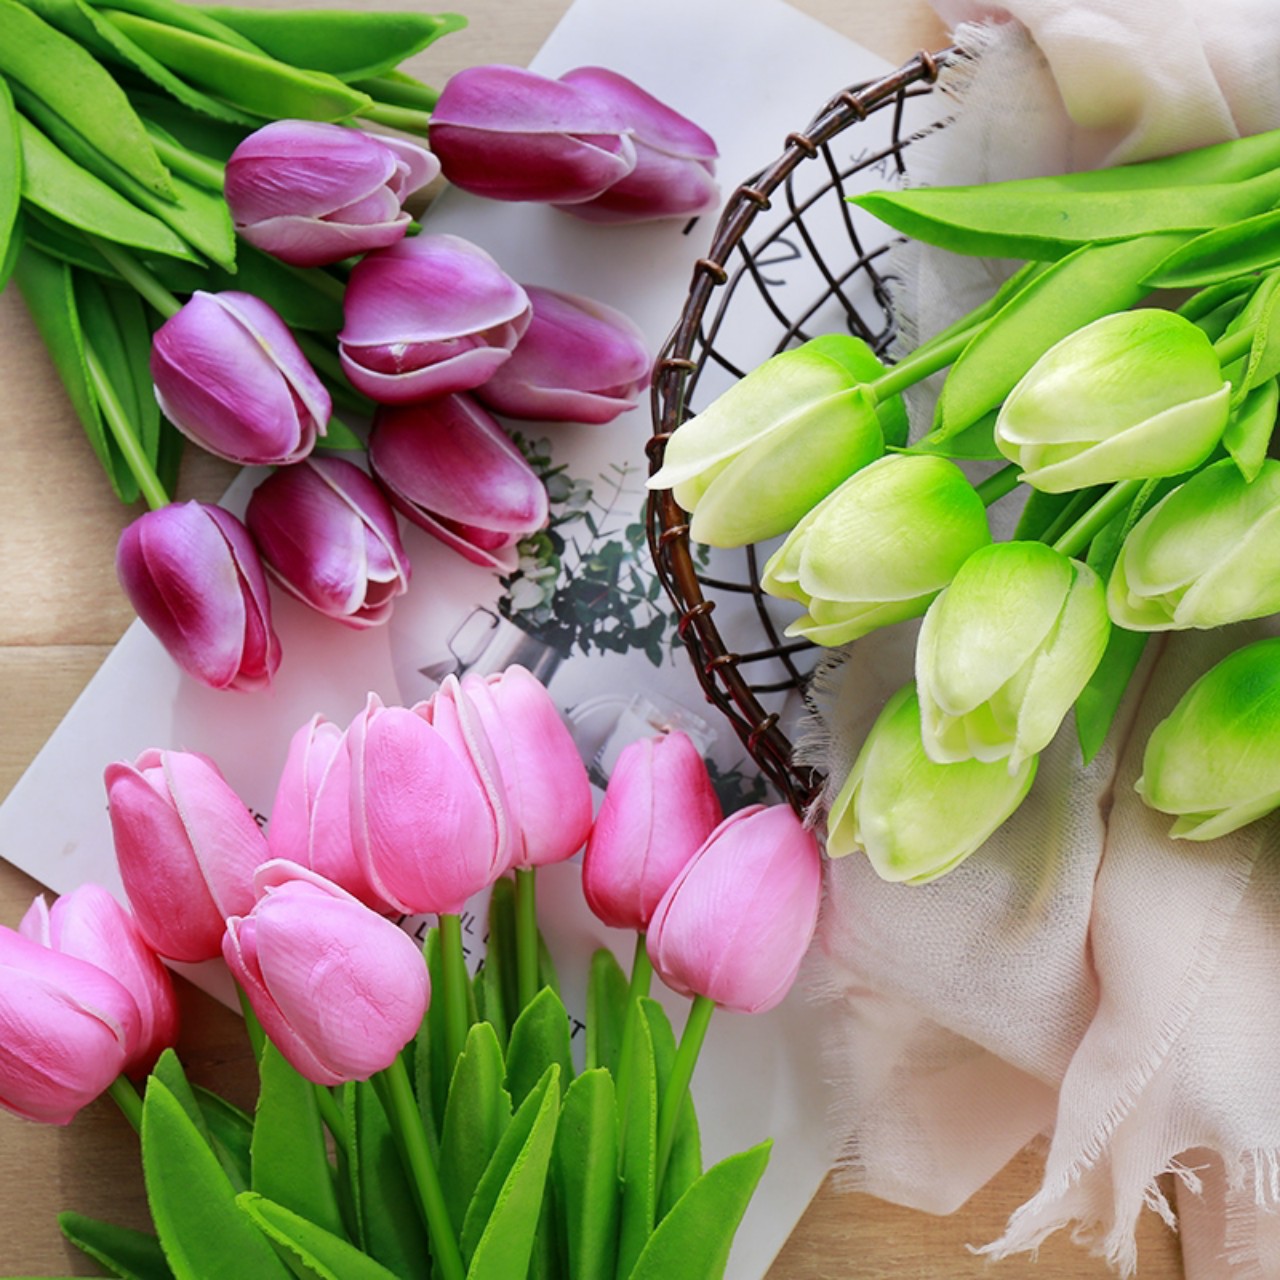 Hoa tuylip giả lá thẳng chất liệu PU, hoa tulip giả dùng để chụp ảnh, decor, trang trí nhà cửa.